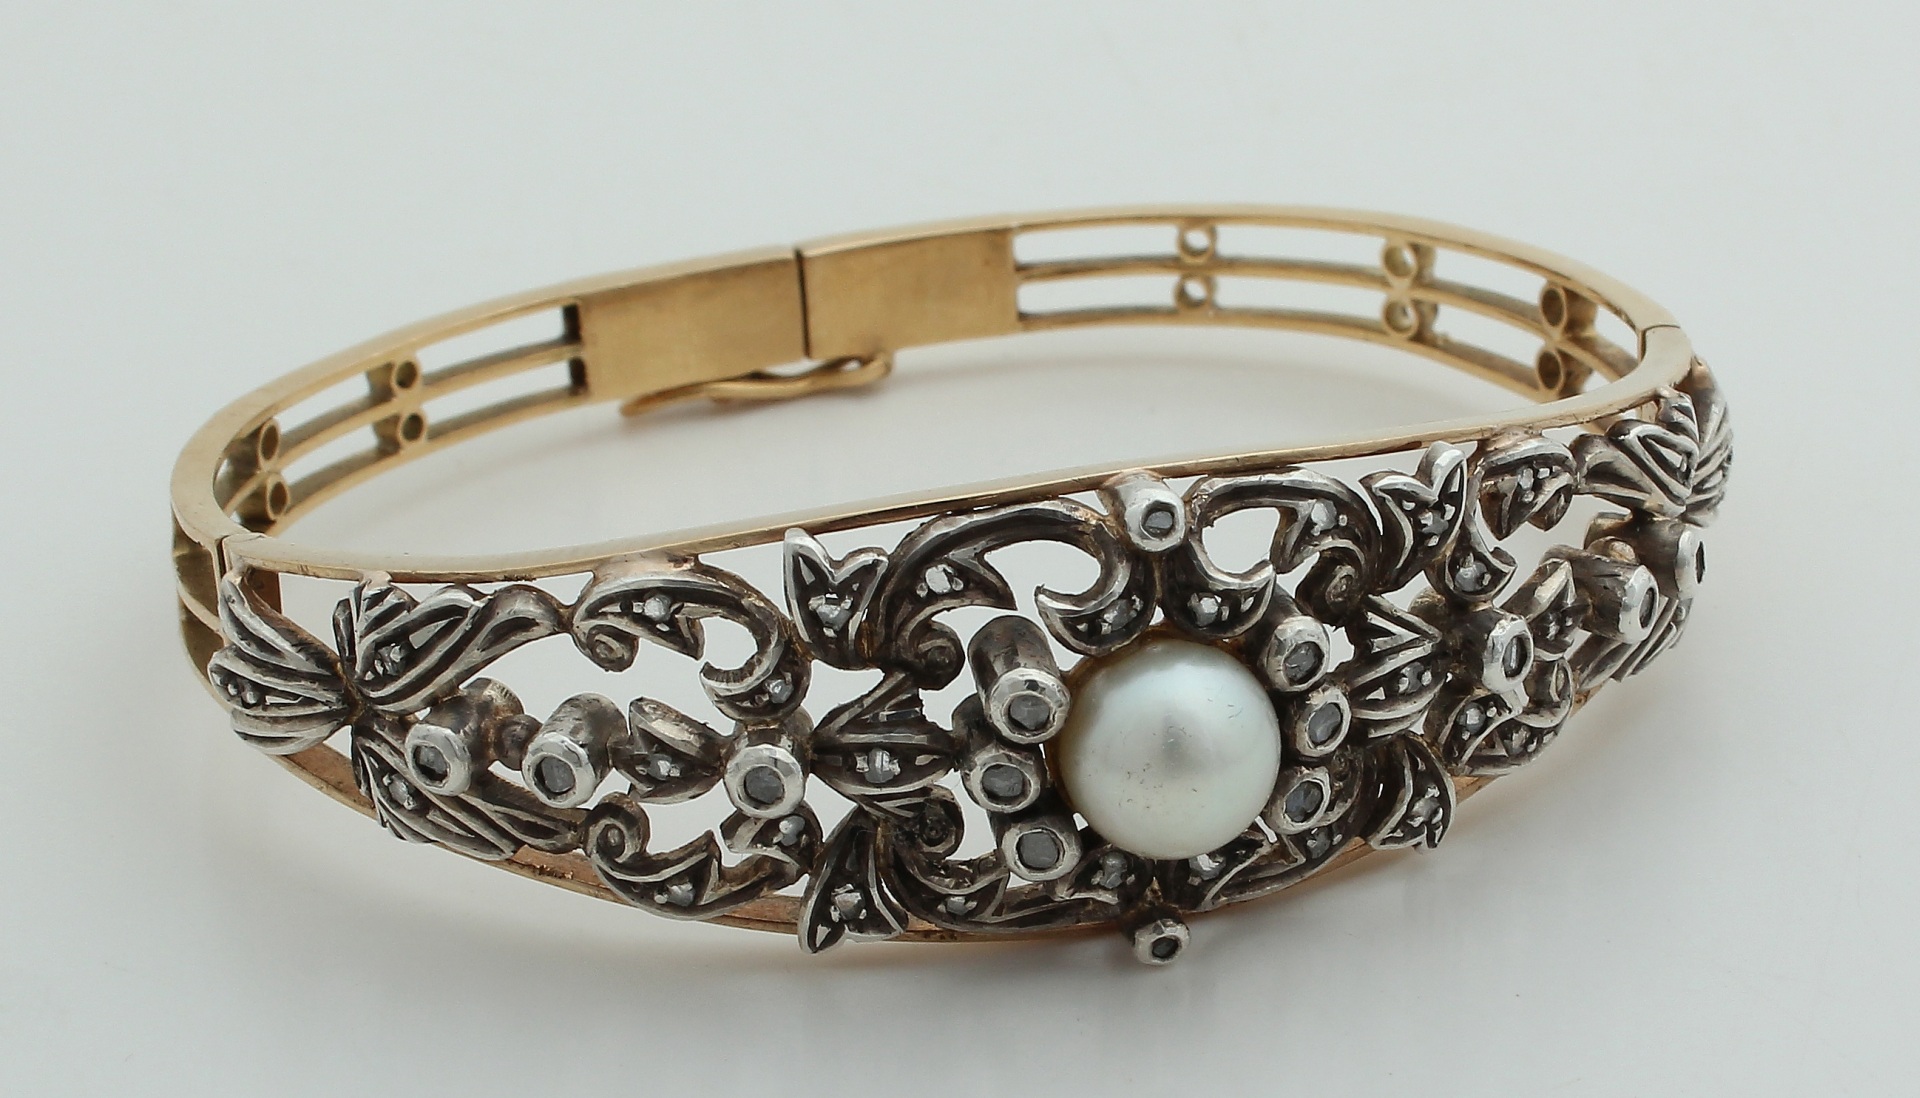 Gewoon In de naam Piket Antieke gouden armband - auctions & price archive